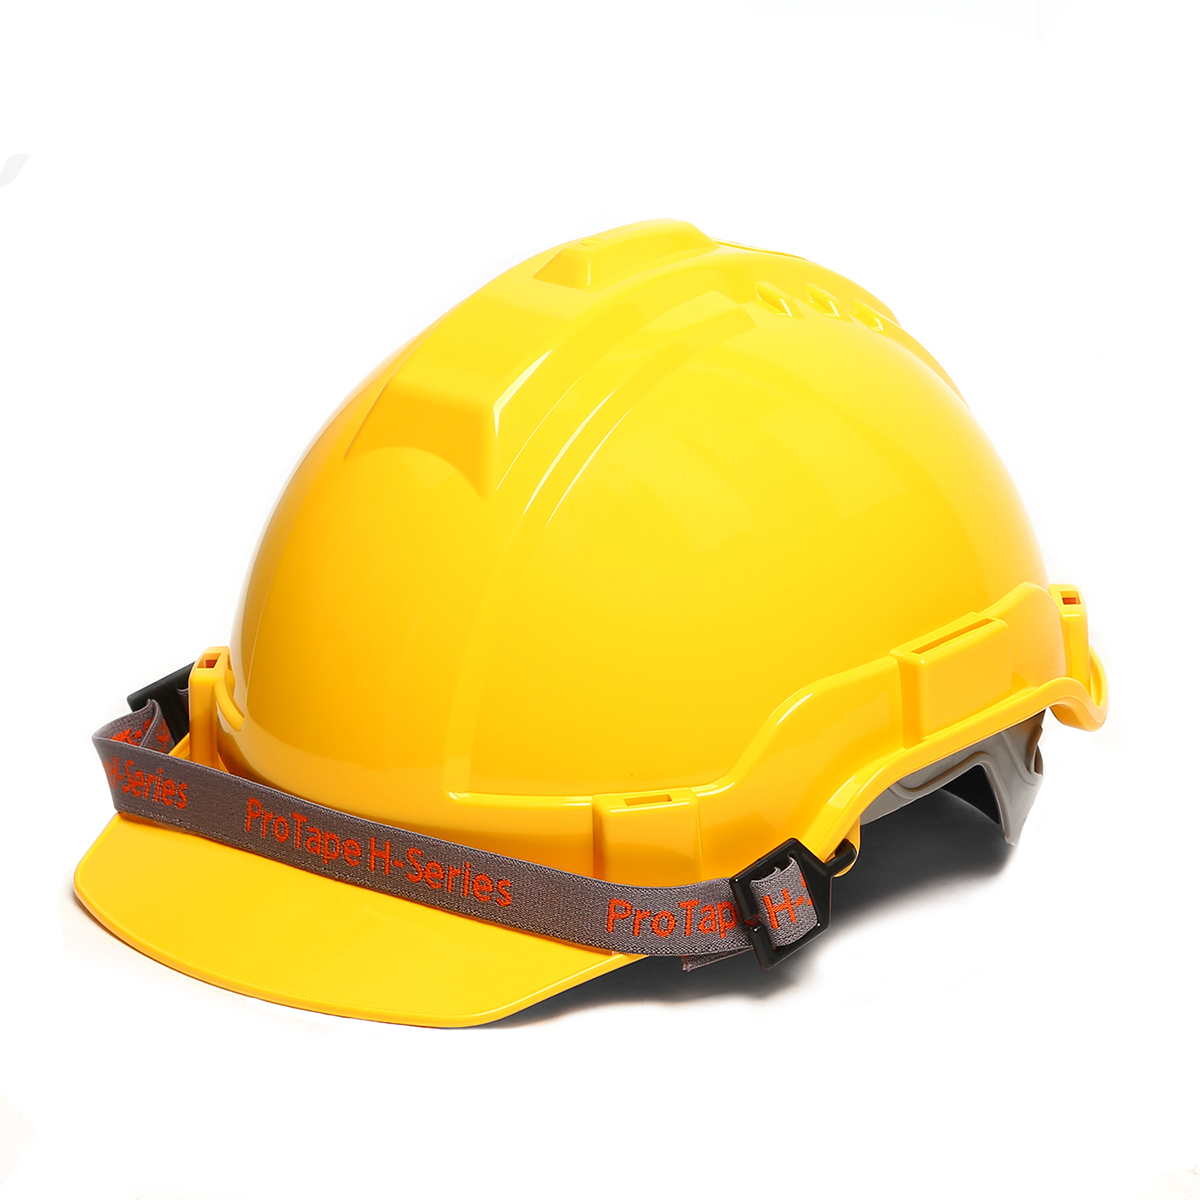 หมวกเซฟตี้ หมวกนิรภัย หมวกวิศกร หมวกก่อสร้าง ABS โปรเทป (PROTAPE) รุ่น SS200 ได้รับมาตรฐาน มอก. ปรับขนาดได้ สีเหลือง PROTAPE SS200 หมวกนิรภัย ABS สีเหลือง (มอก.)